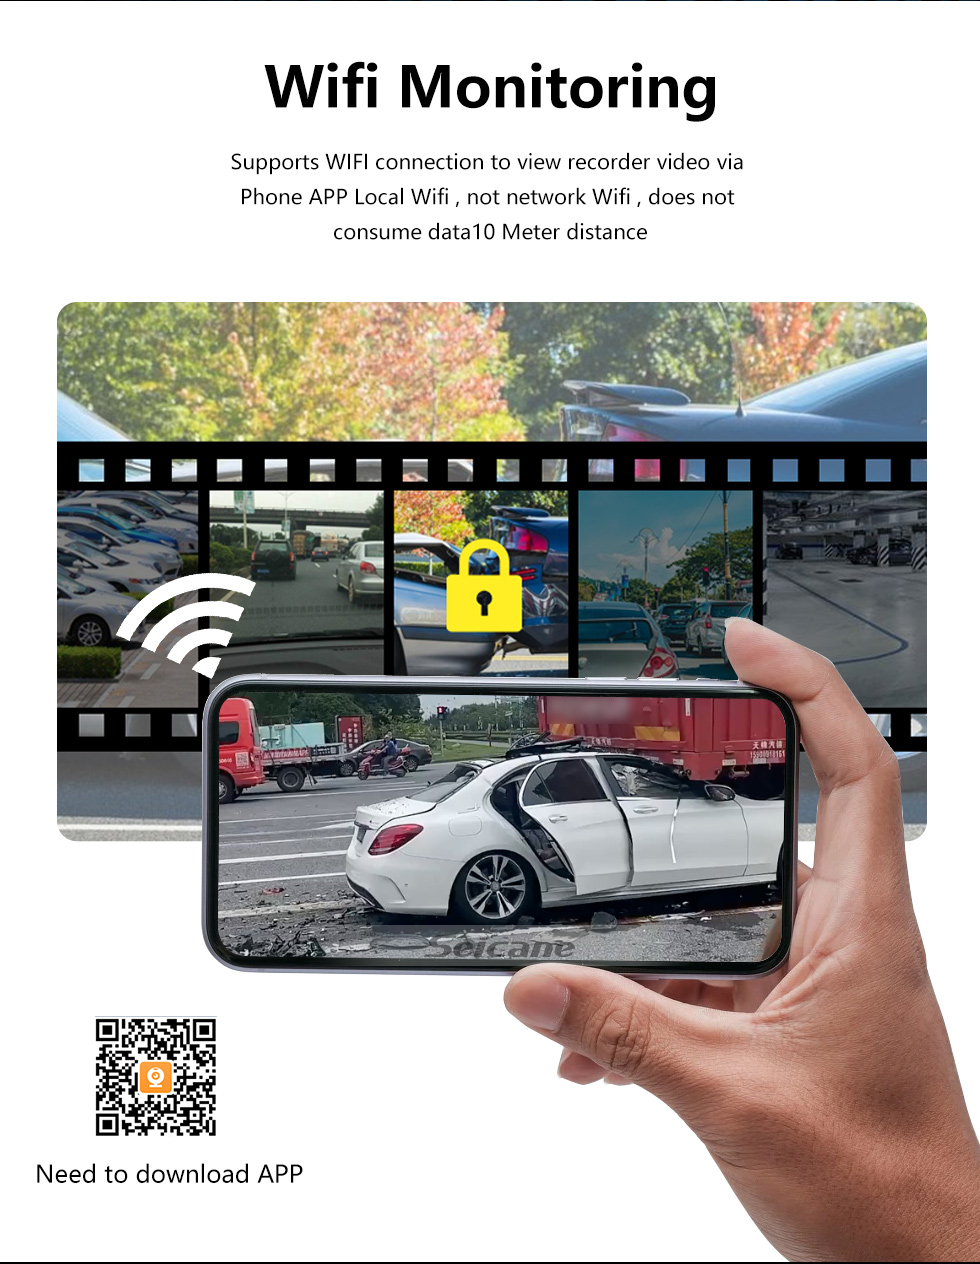 Seicane 11,26 pouces sans fil Carplay Android Auto Car WiFi Recorder 2.5K + 1080P Streaming Media Décodeur de code vidéo intégré Prise en charge du code vidéo 4K H.265